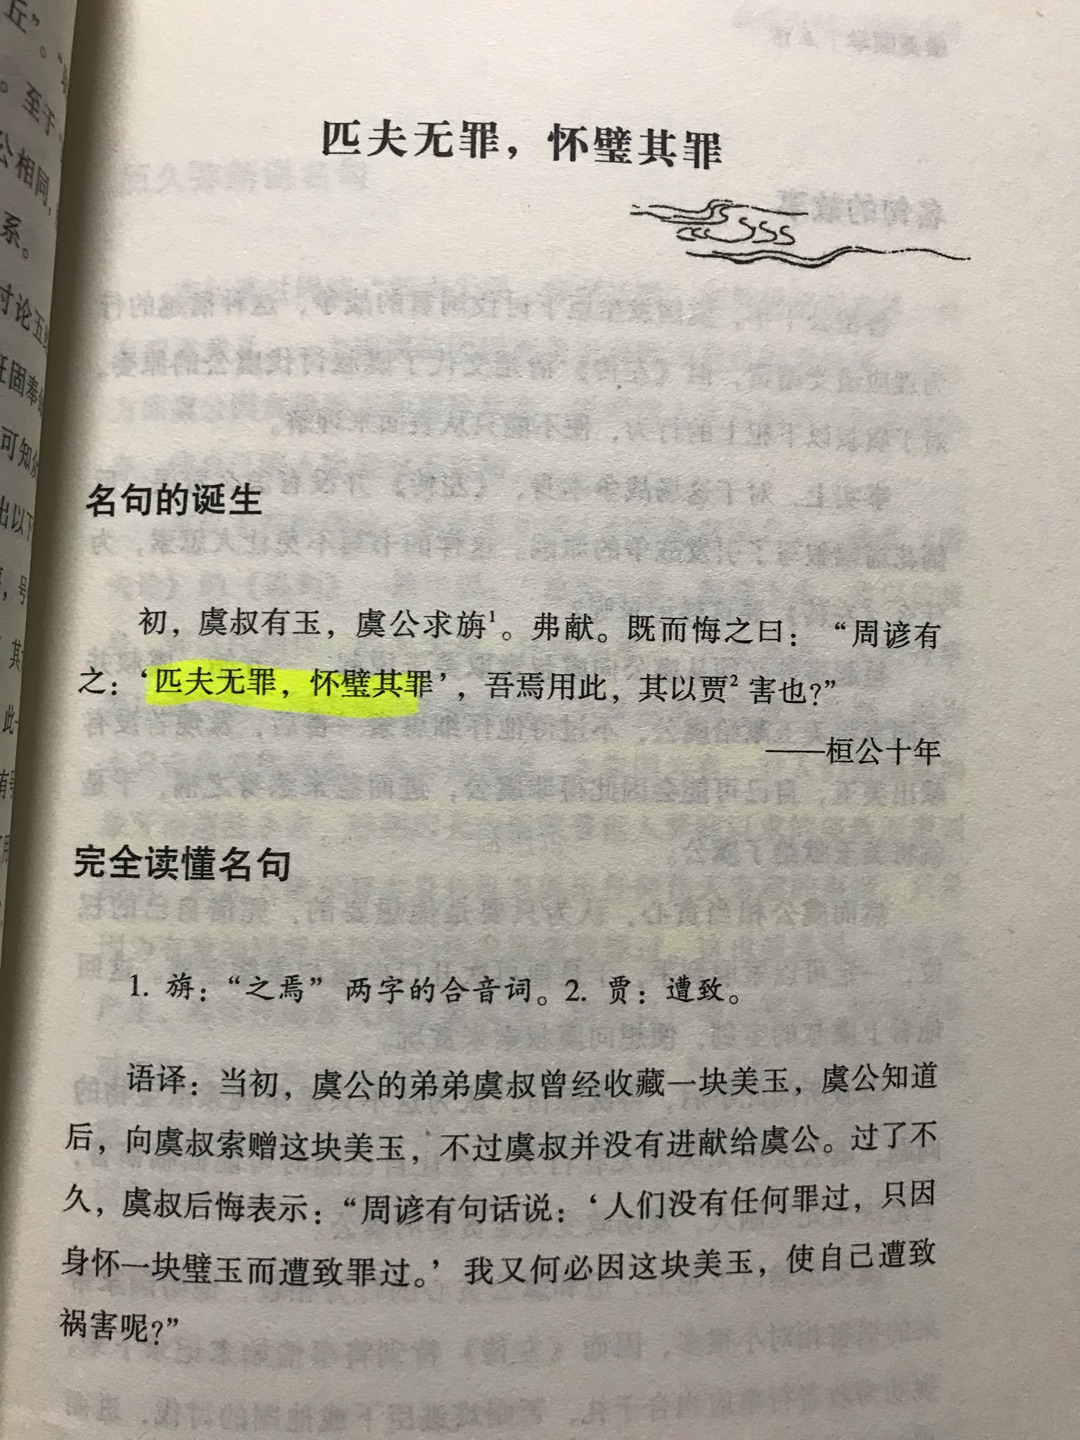 左传里有很多经典的故事，左传以记录坏事给人教训。台湾作者写作风格独特，易读，引人入胜，主要是左传的文字太简洁难以理解。建议结合左传一起读。